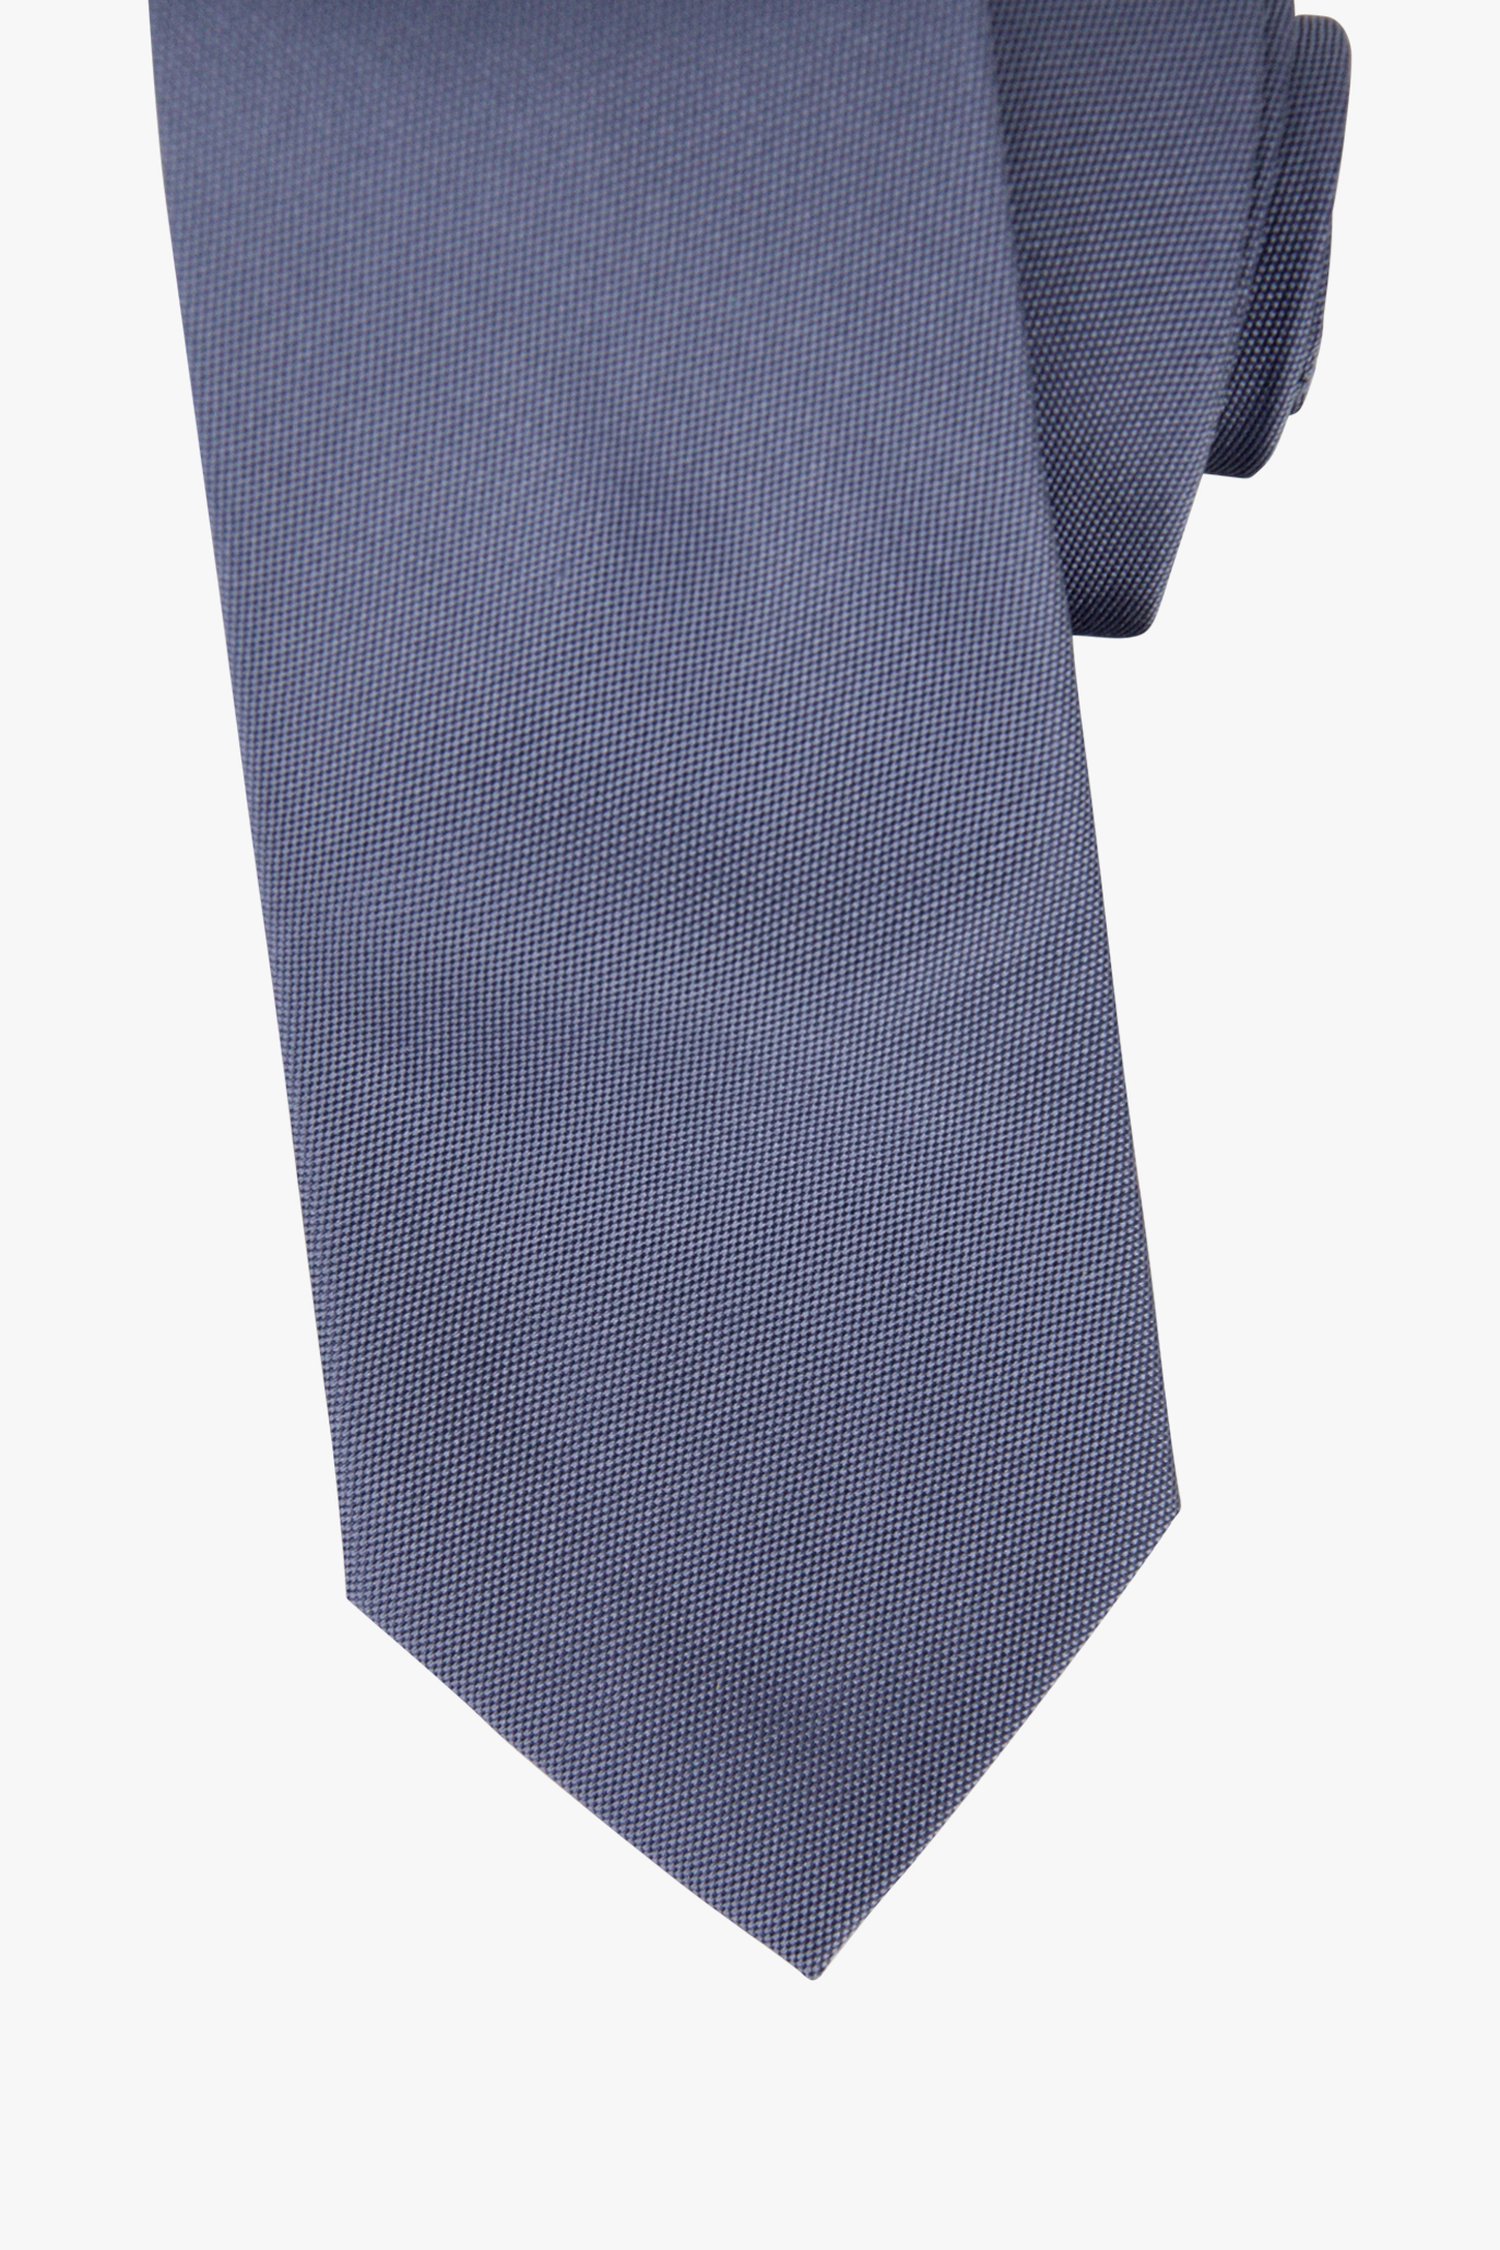 Cravate bleue de Michaelis pour Hommes